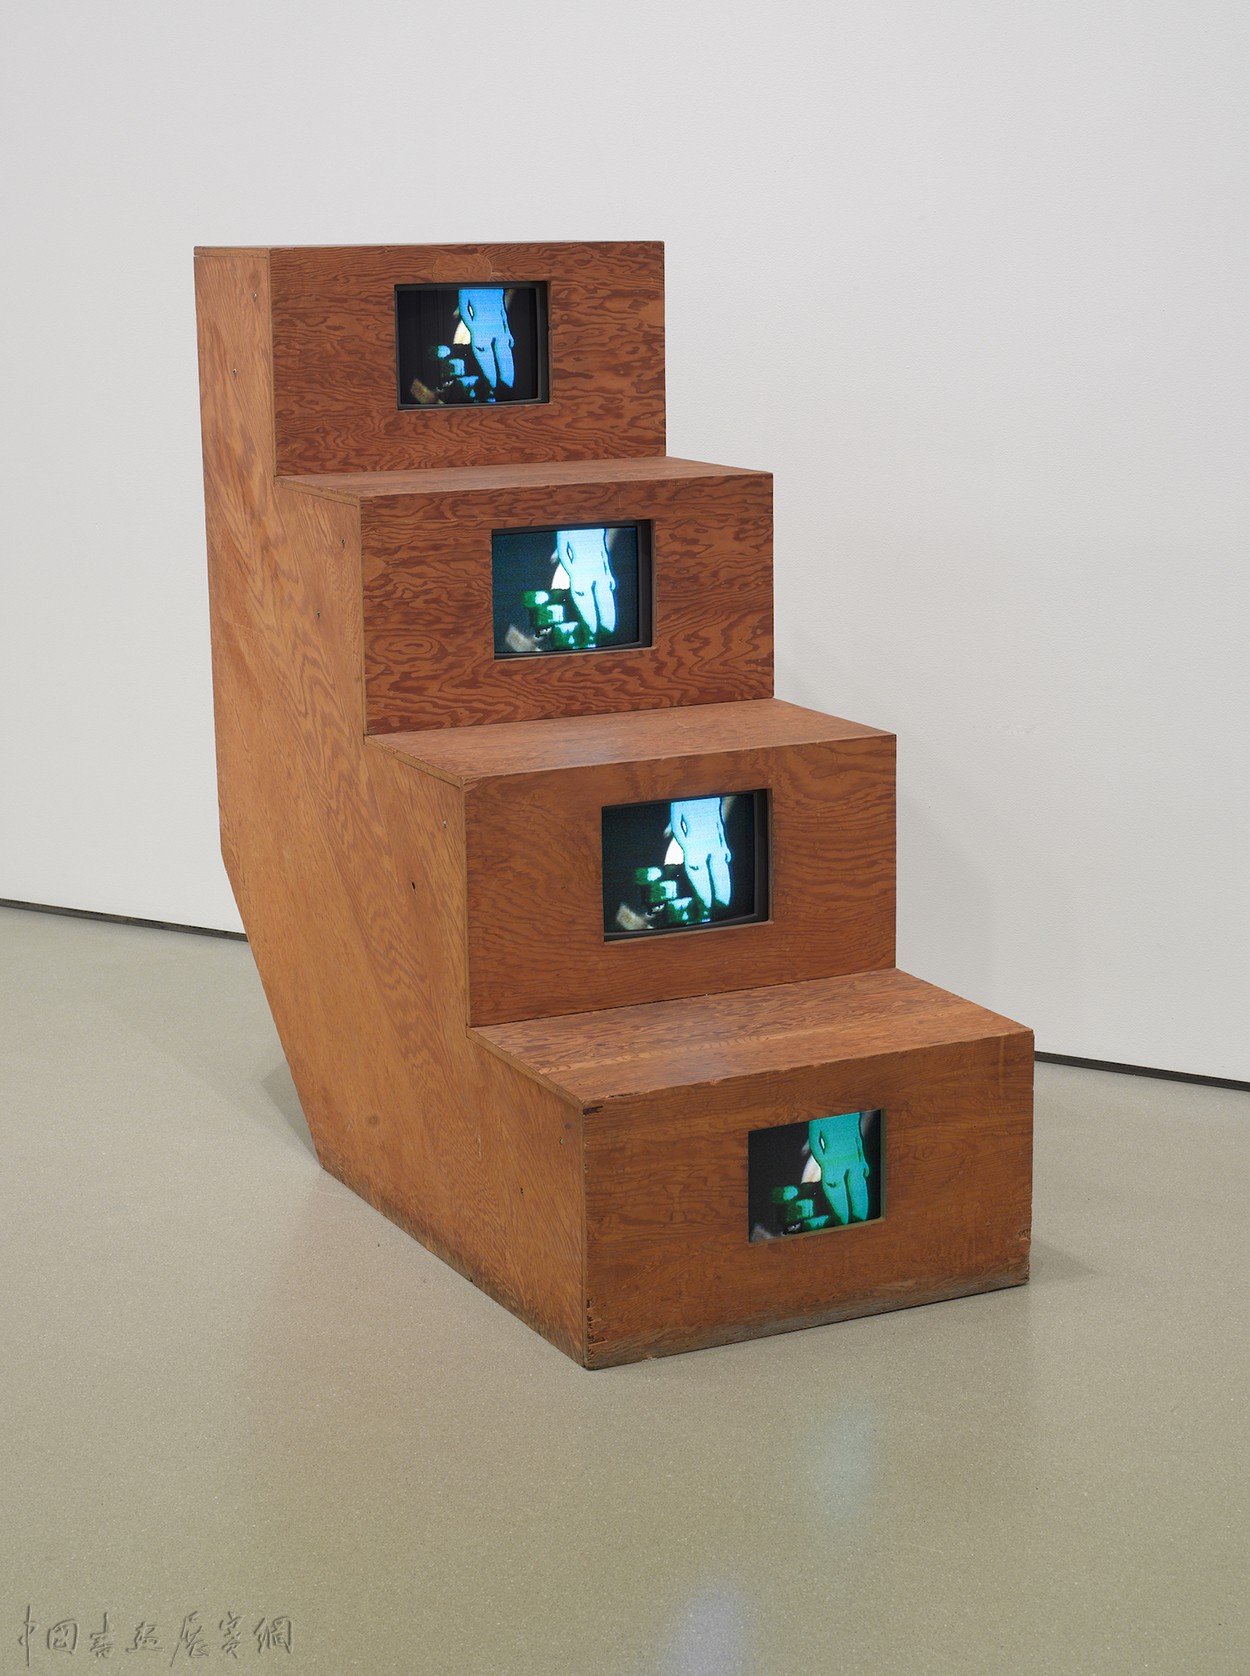 告别白南准的笼罩，纽约MoMA推出久保田成子个展